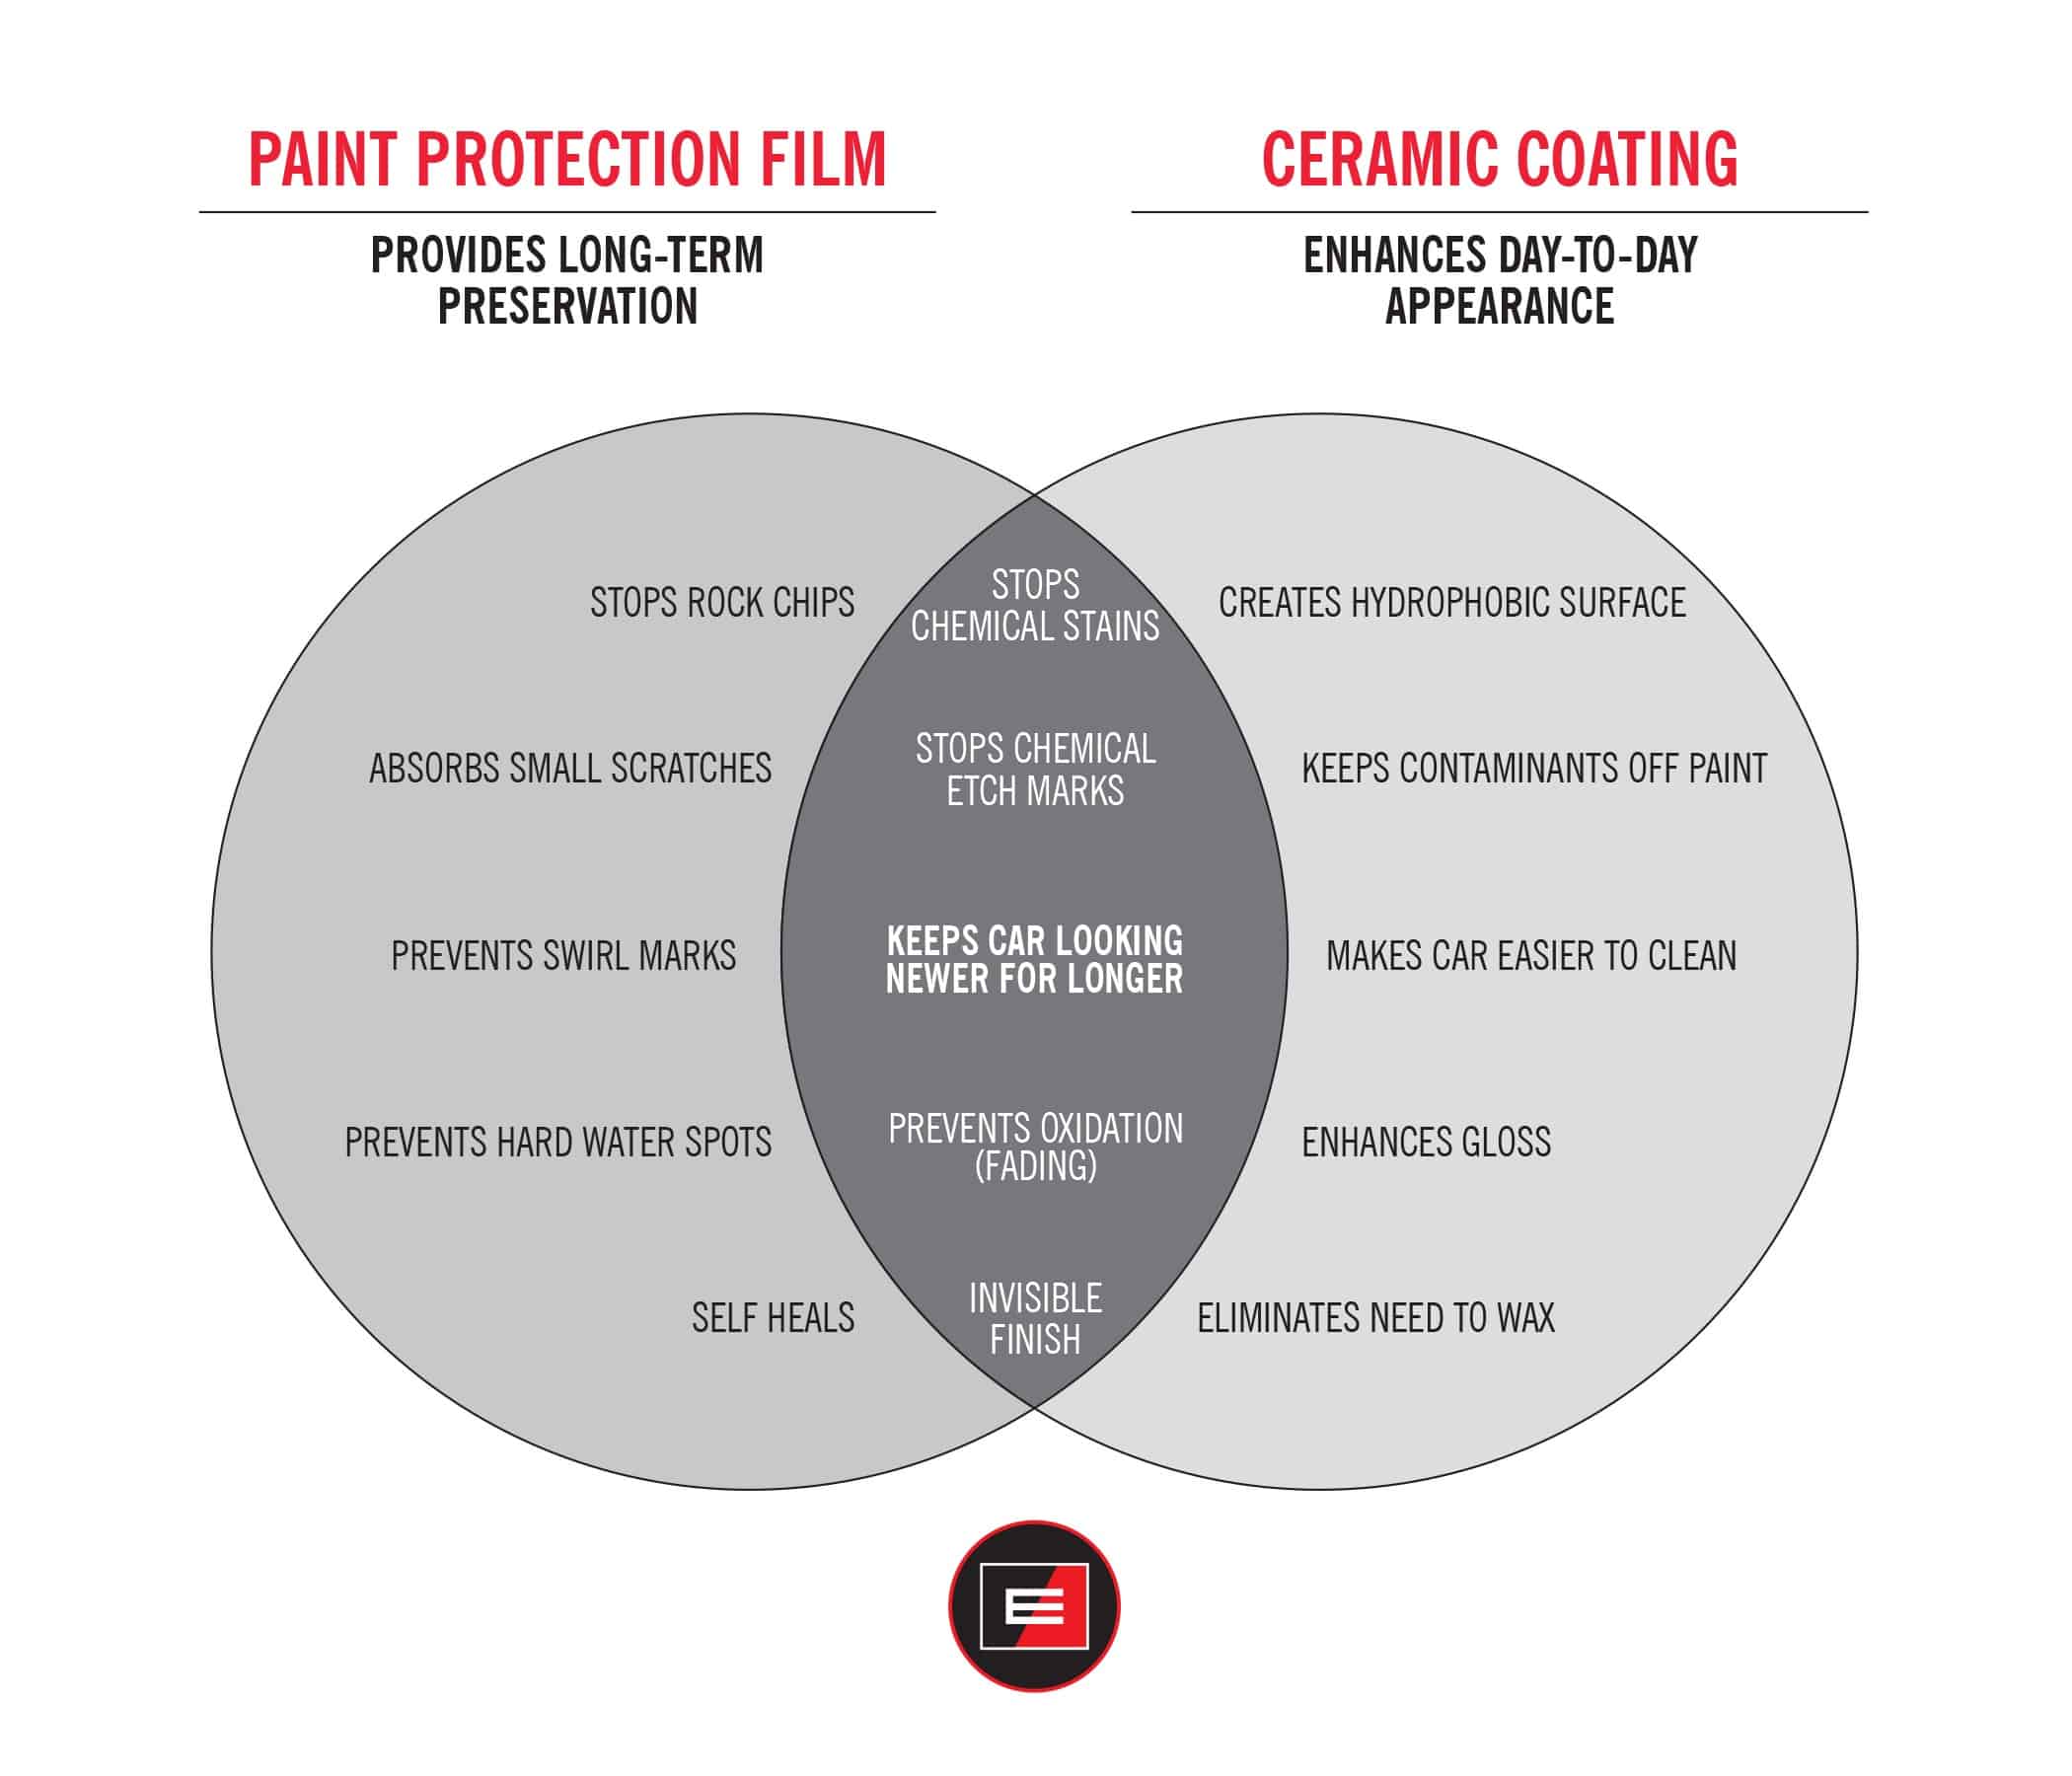 Glass Coating vs. Ceramic Coating